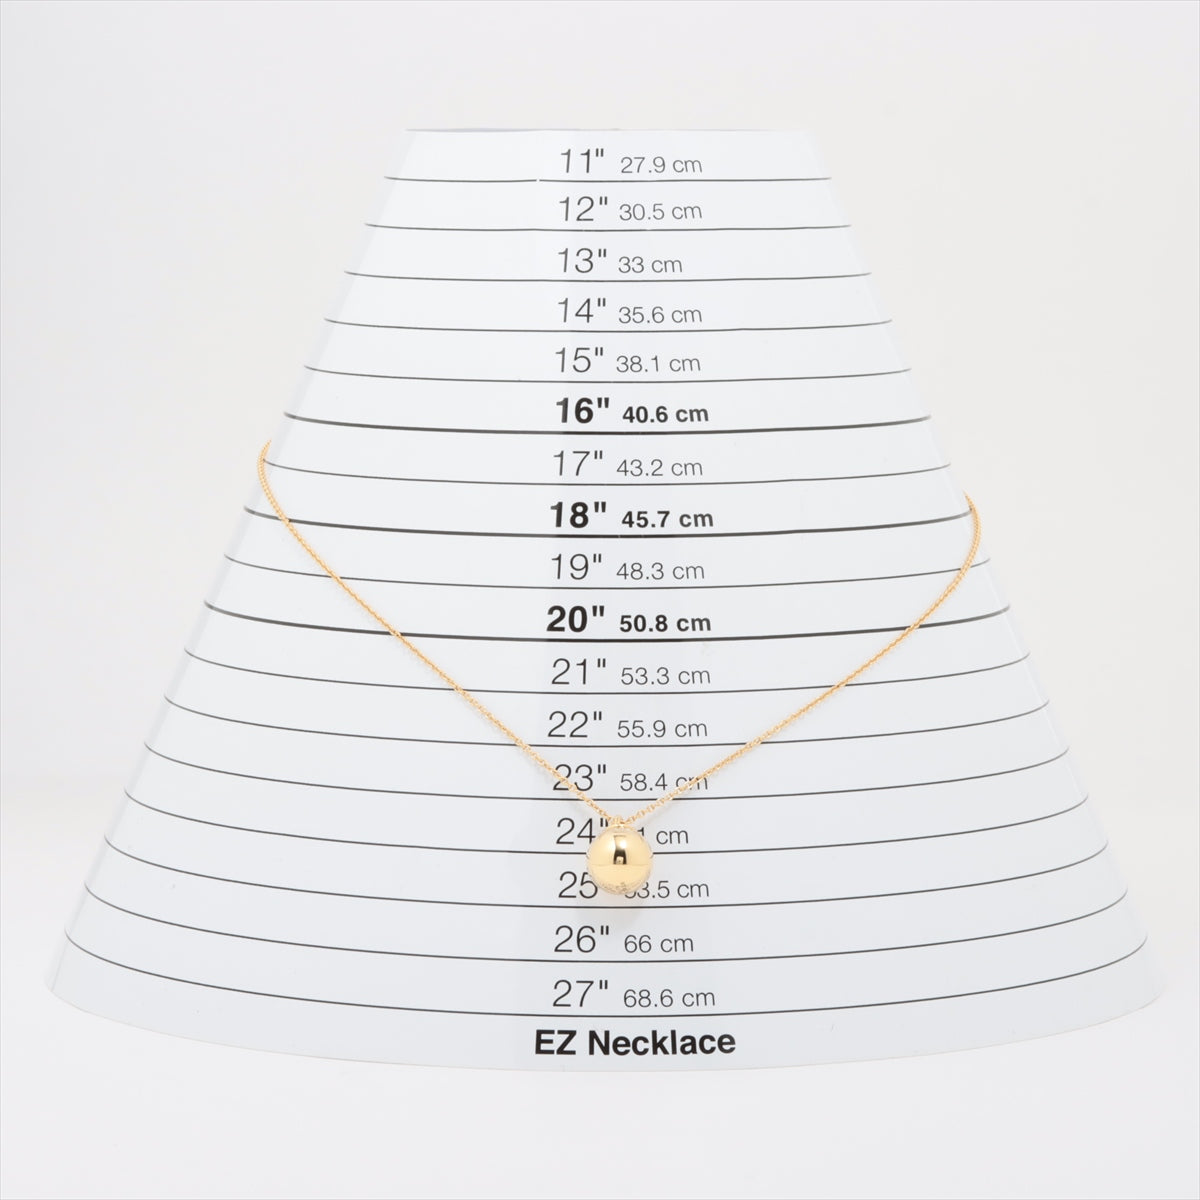 Tiffany HardWear Ball Necklace 750(YG) 9.5g